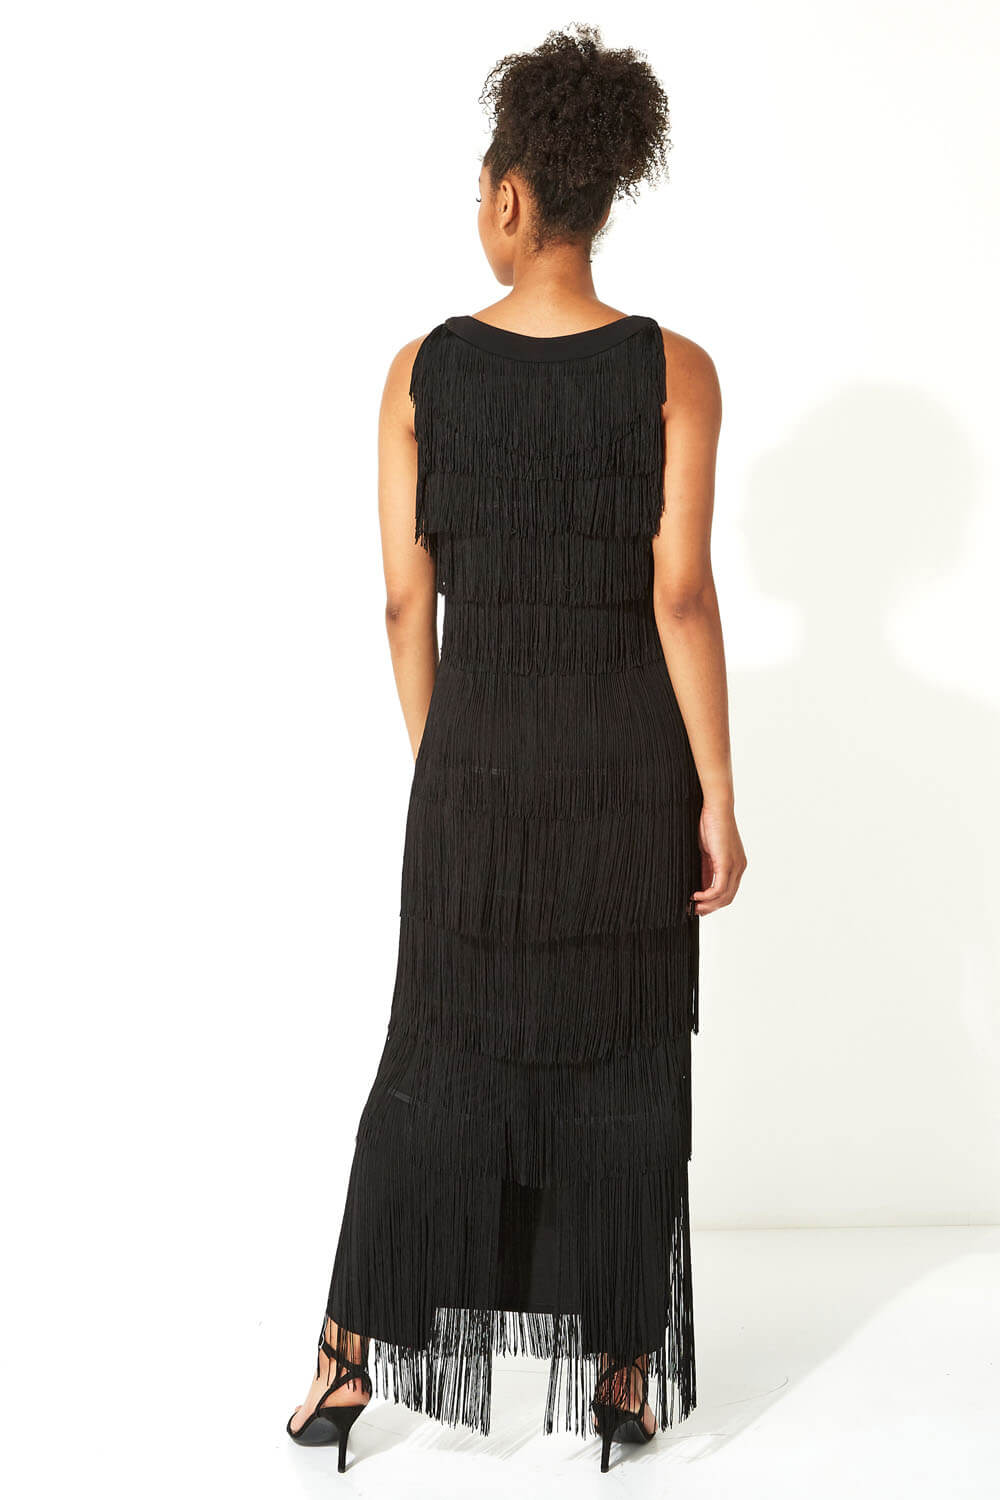 Black Sequin Neckband Fringe Maxi Dress, Image 3 of 4